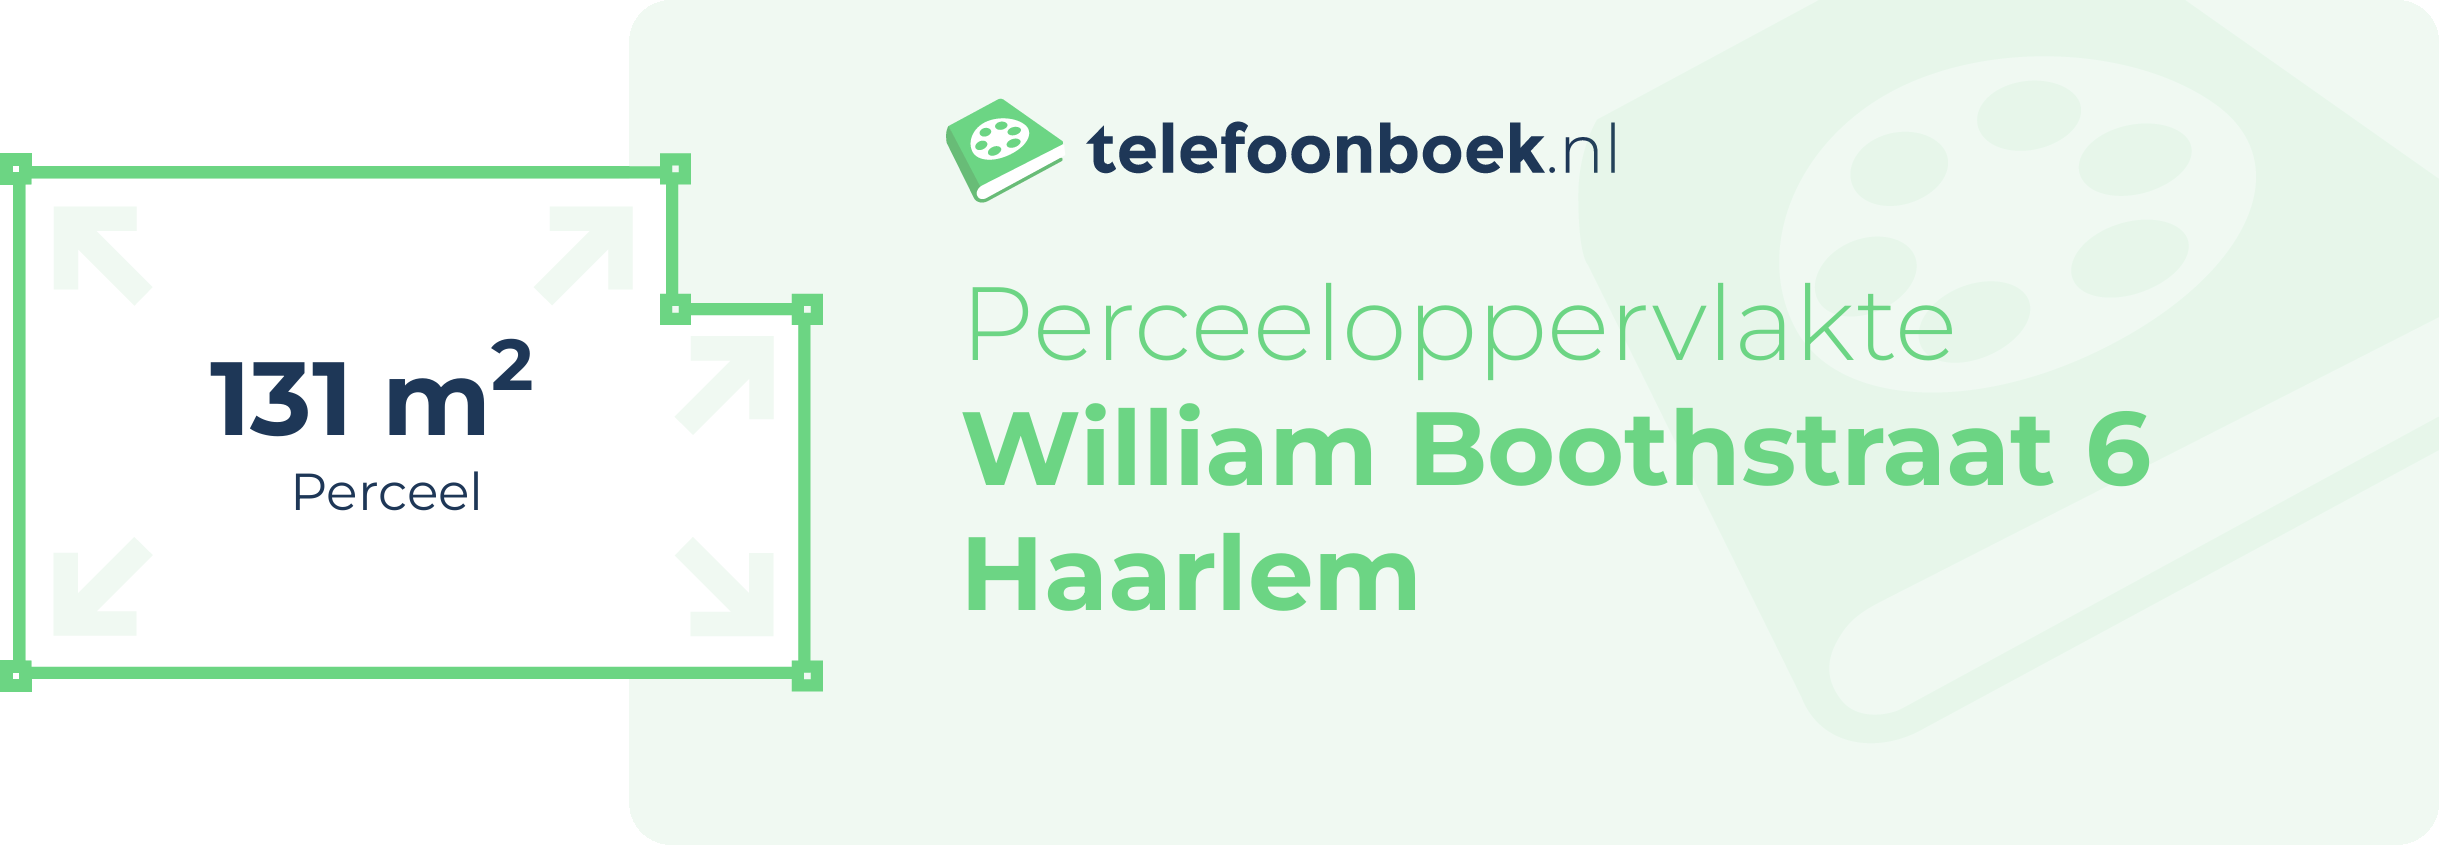 Perceeloppervlakte William Boothstraat 6 Haarlem